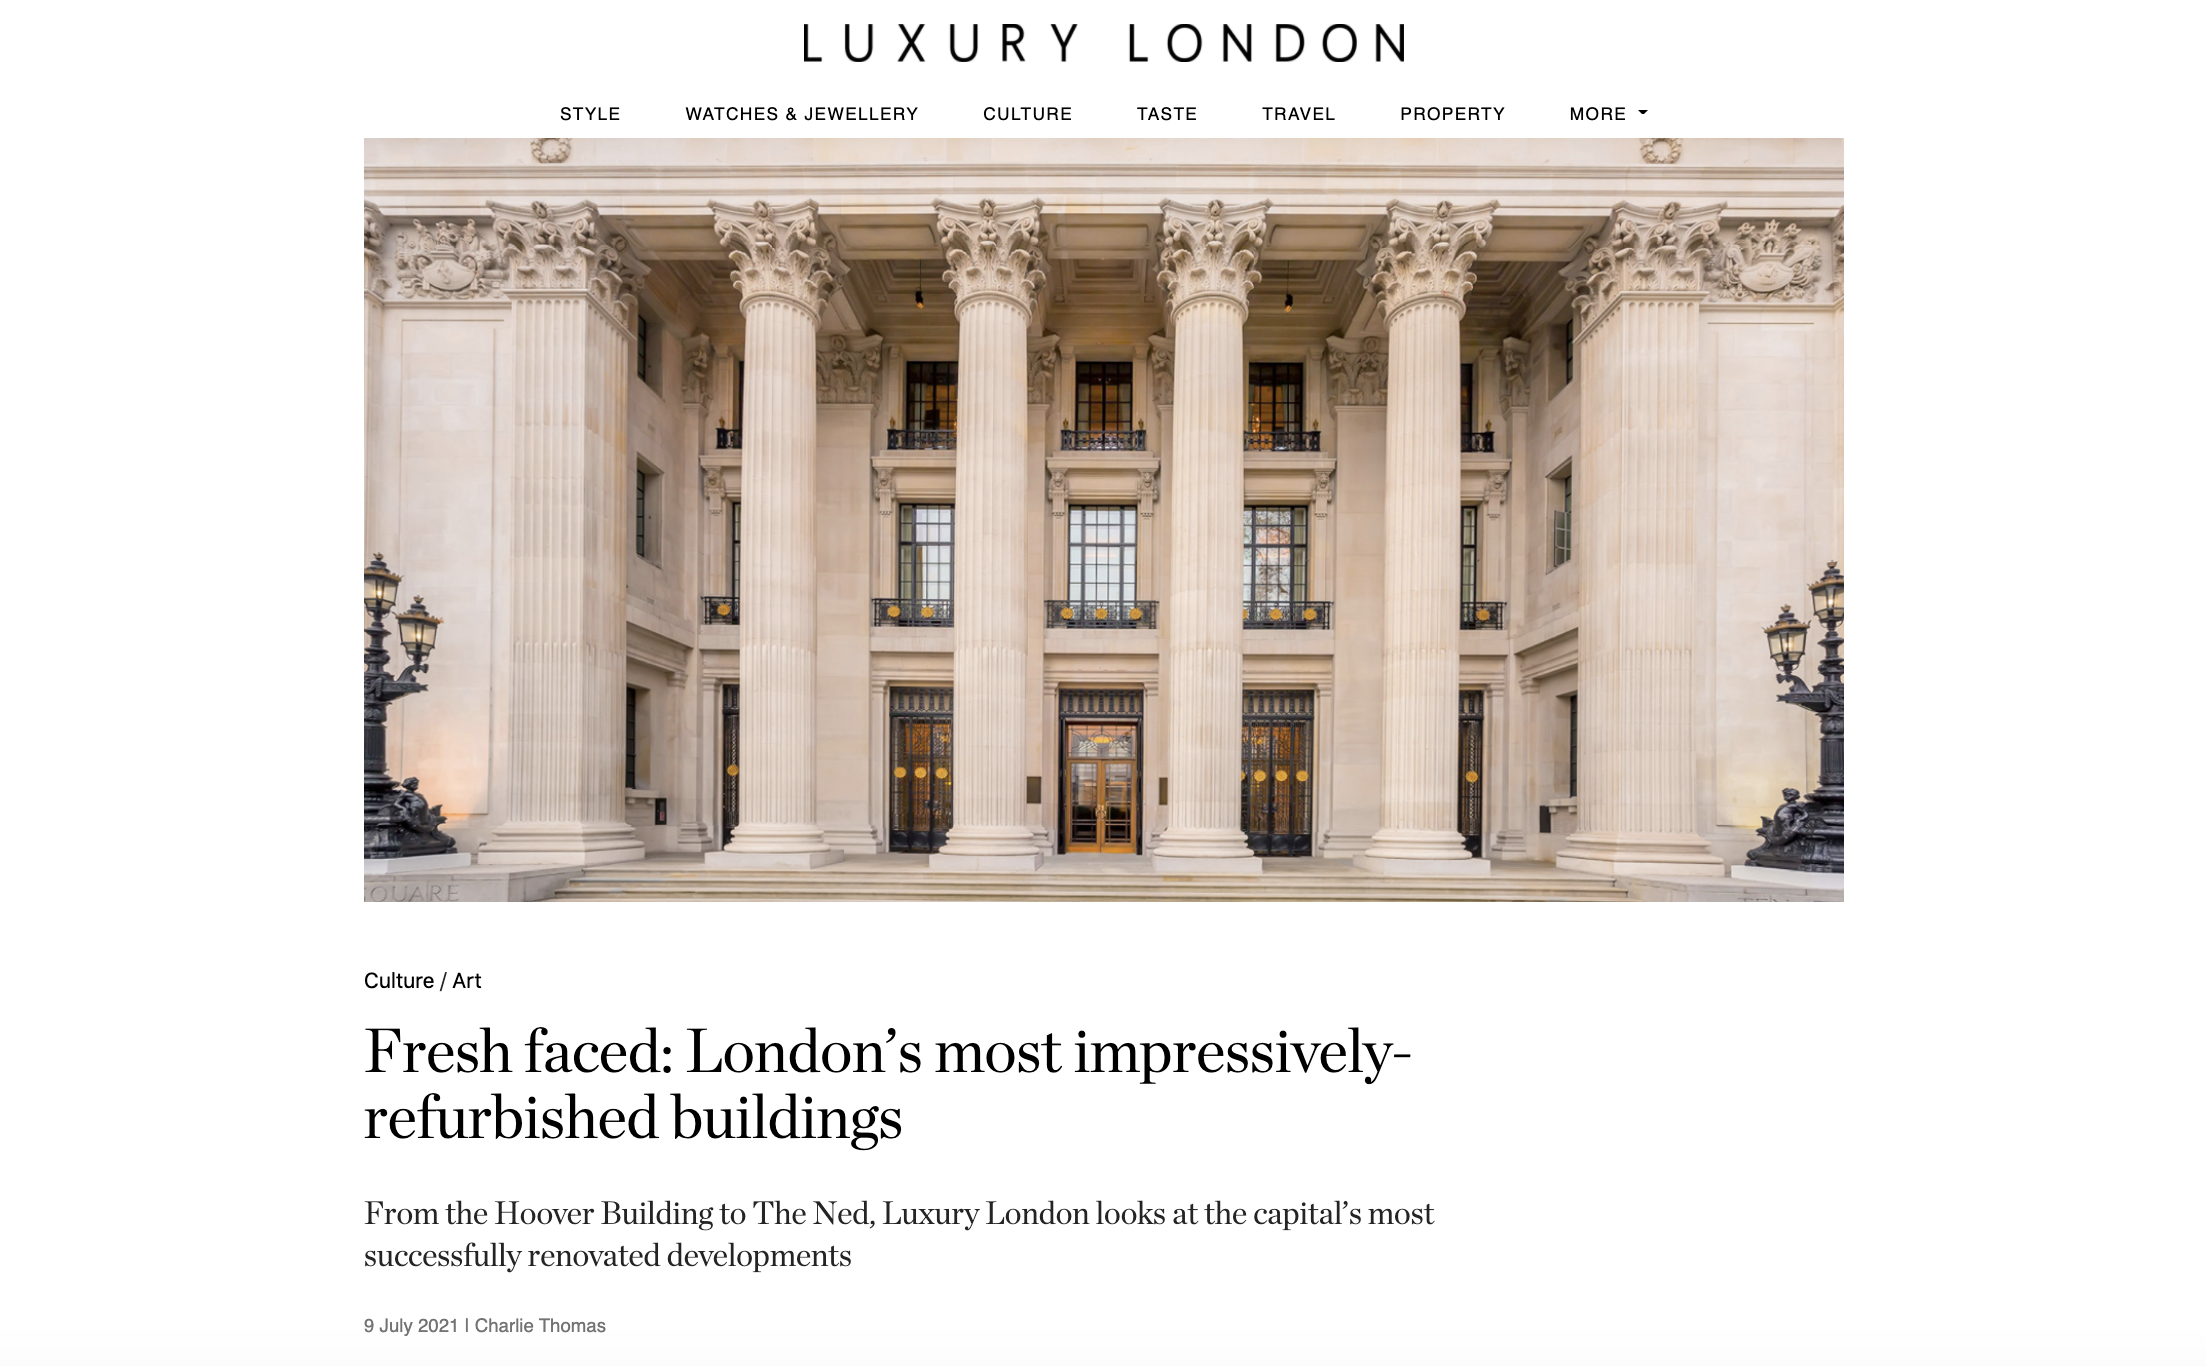 Luxury London - London's best refurbished buildings